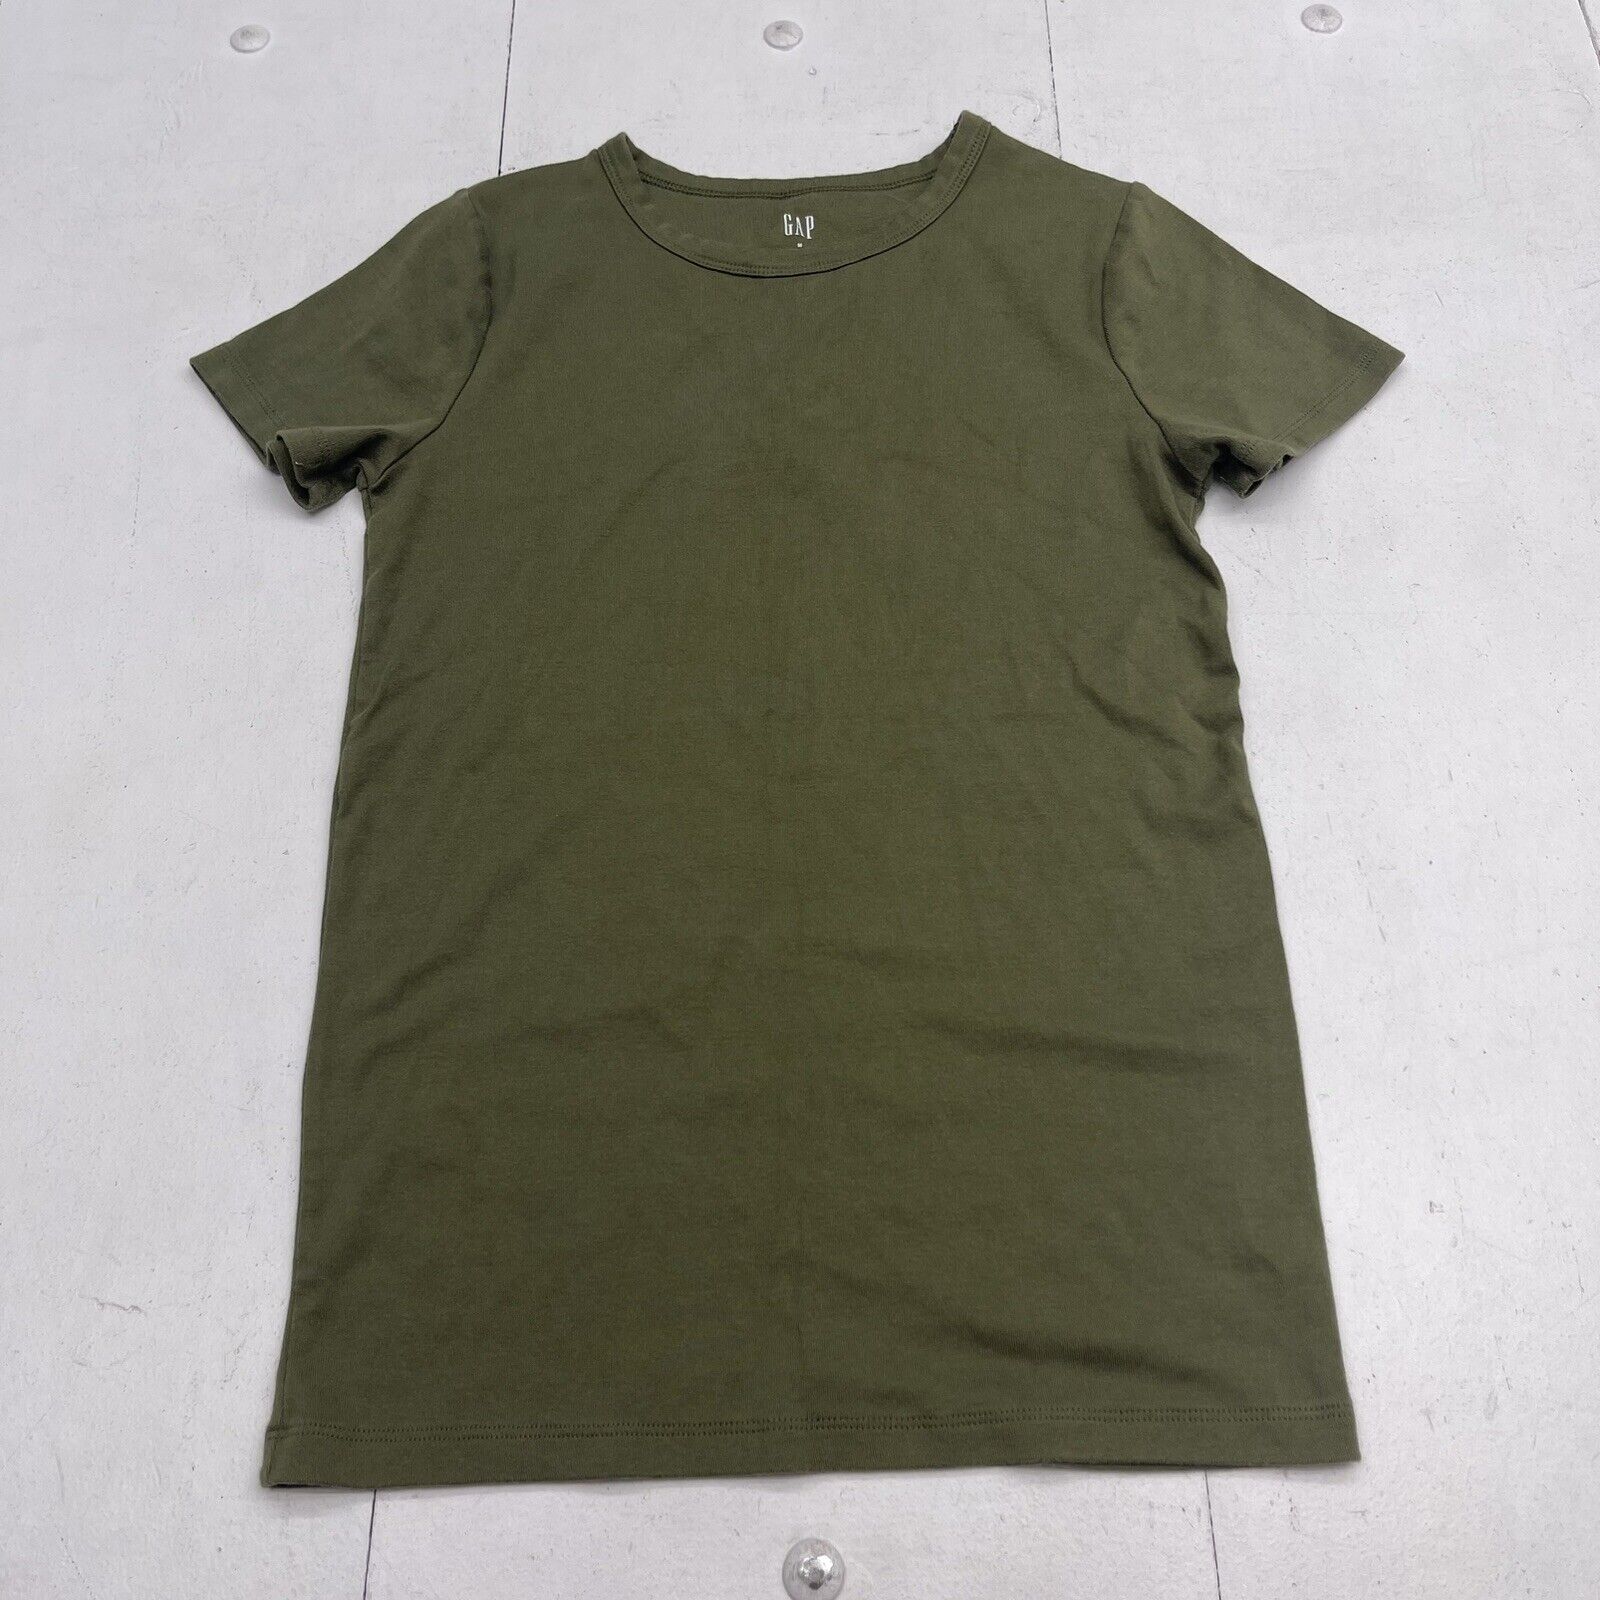 Gap Green Modern Short Sleeve Tee Shirt Women’s Size Medium